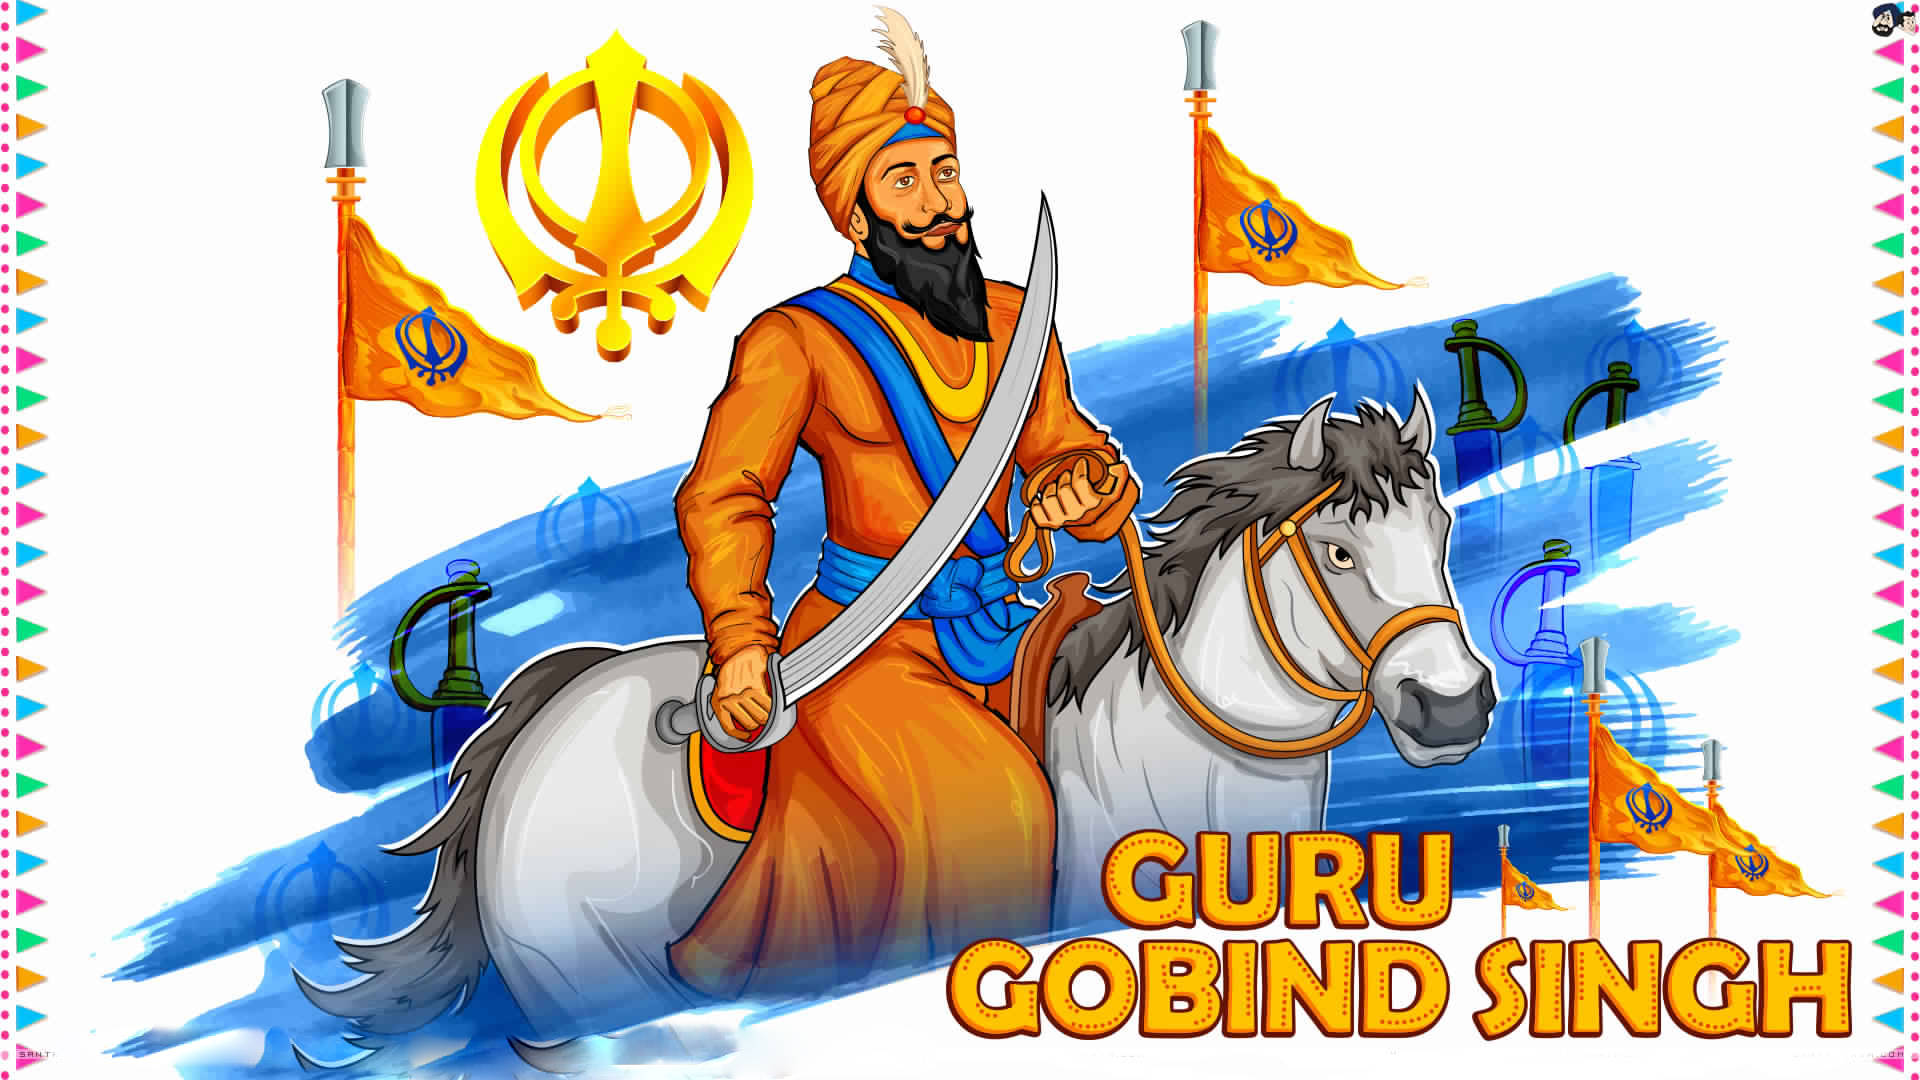 Guru Gobind Singh Ji ridder på en hest Wallpaper